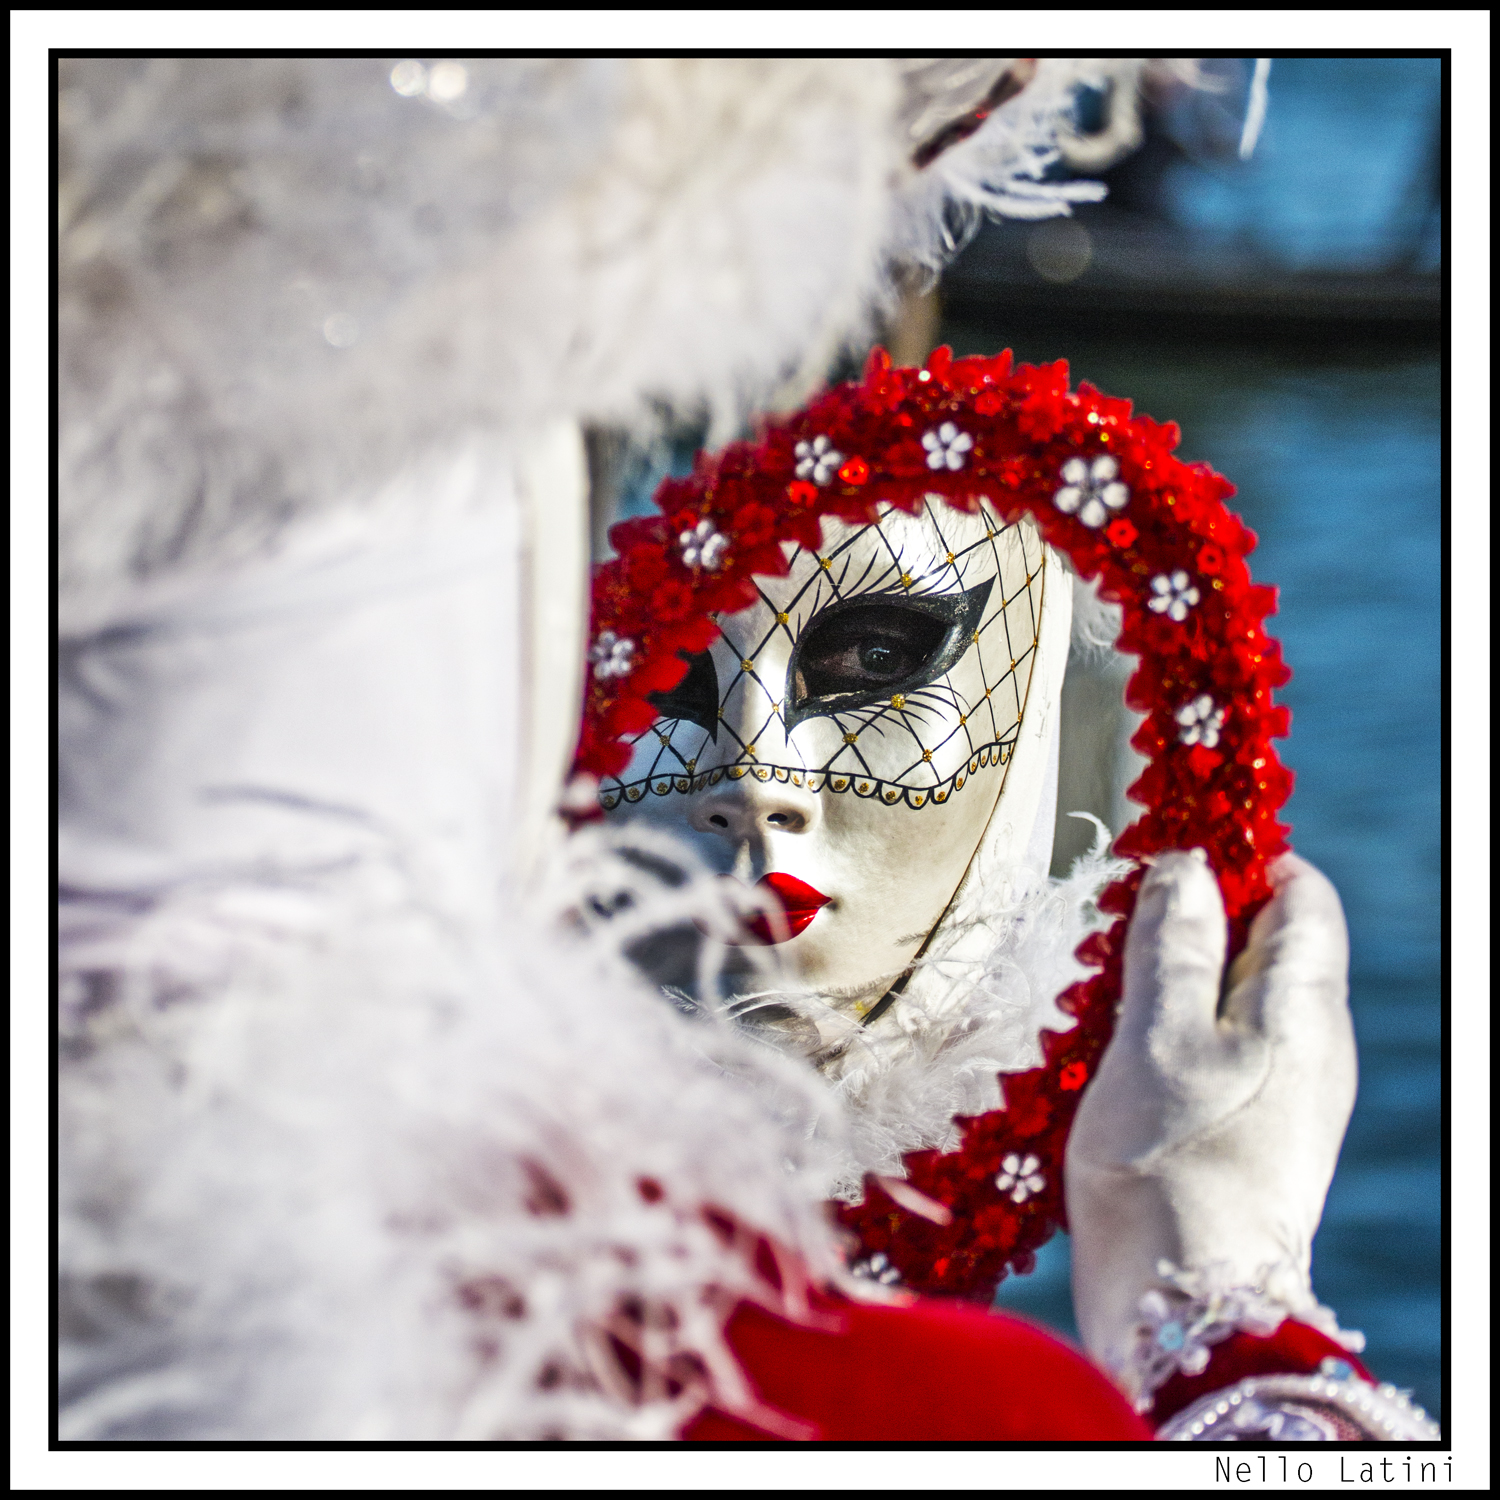 Carnevale Venezia 2014...